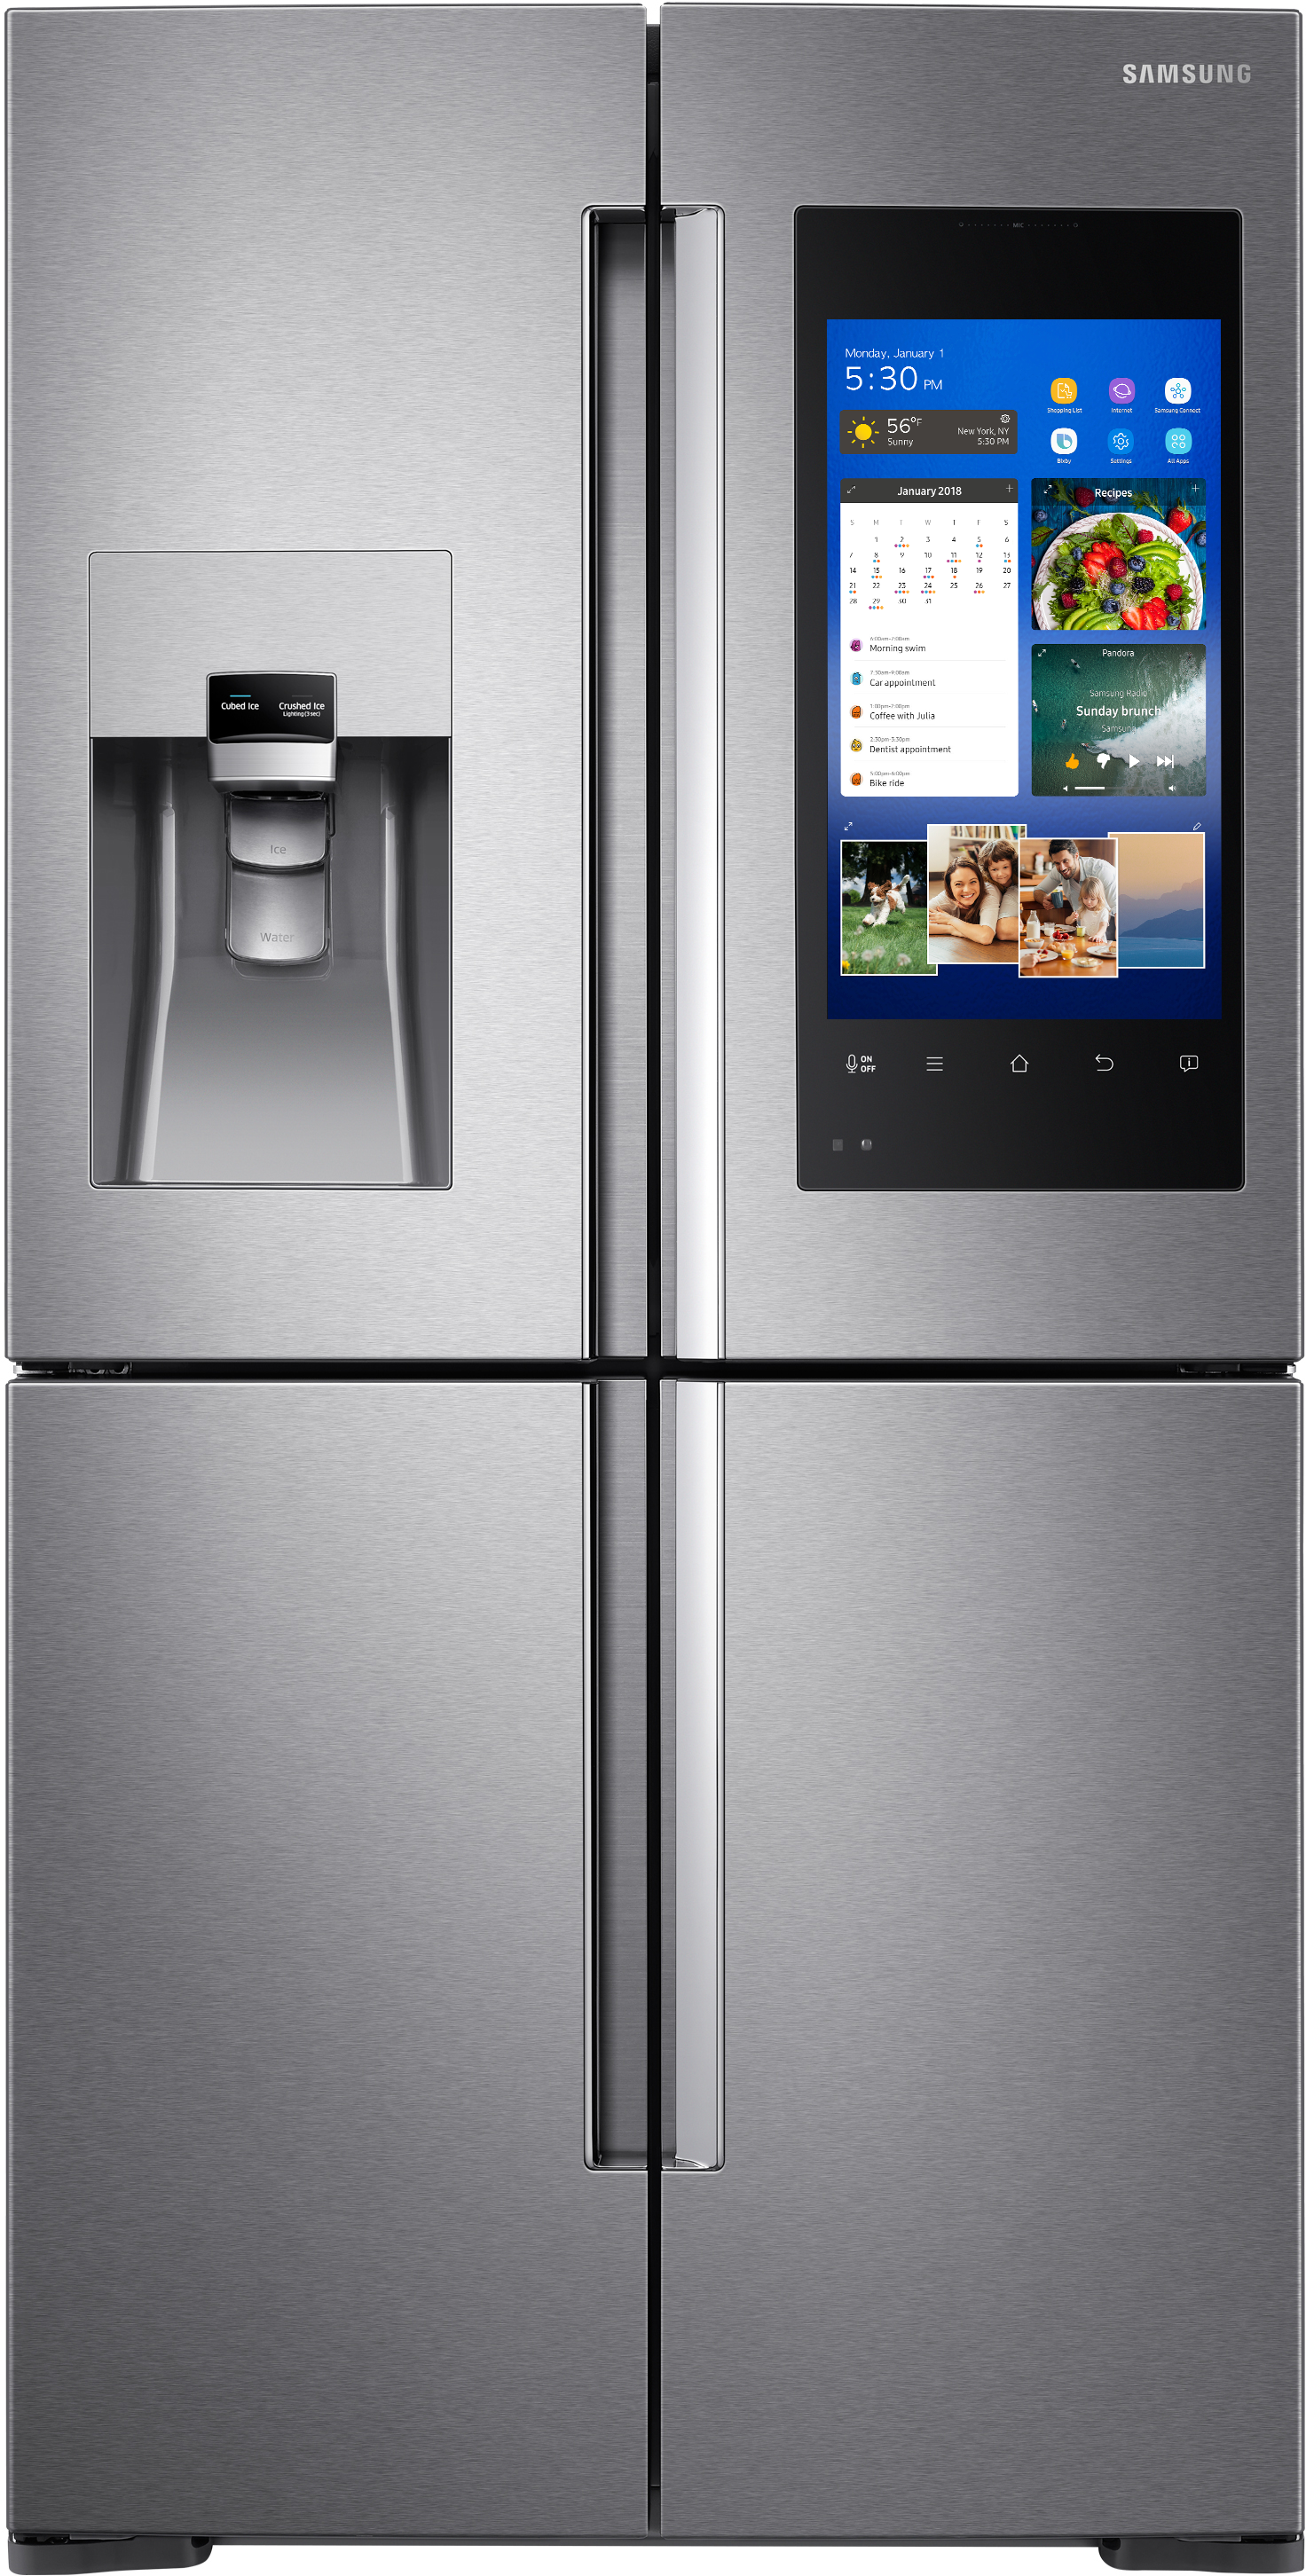 Samsung RF28M9580SR/AA 28.0 Cu. Ft. 4-Door Flex French Door Refrigerator